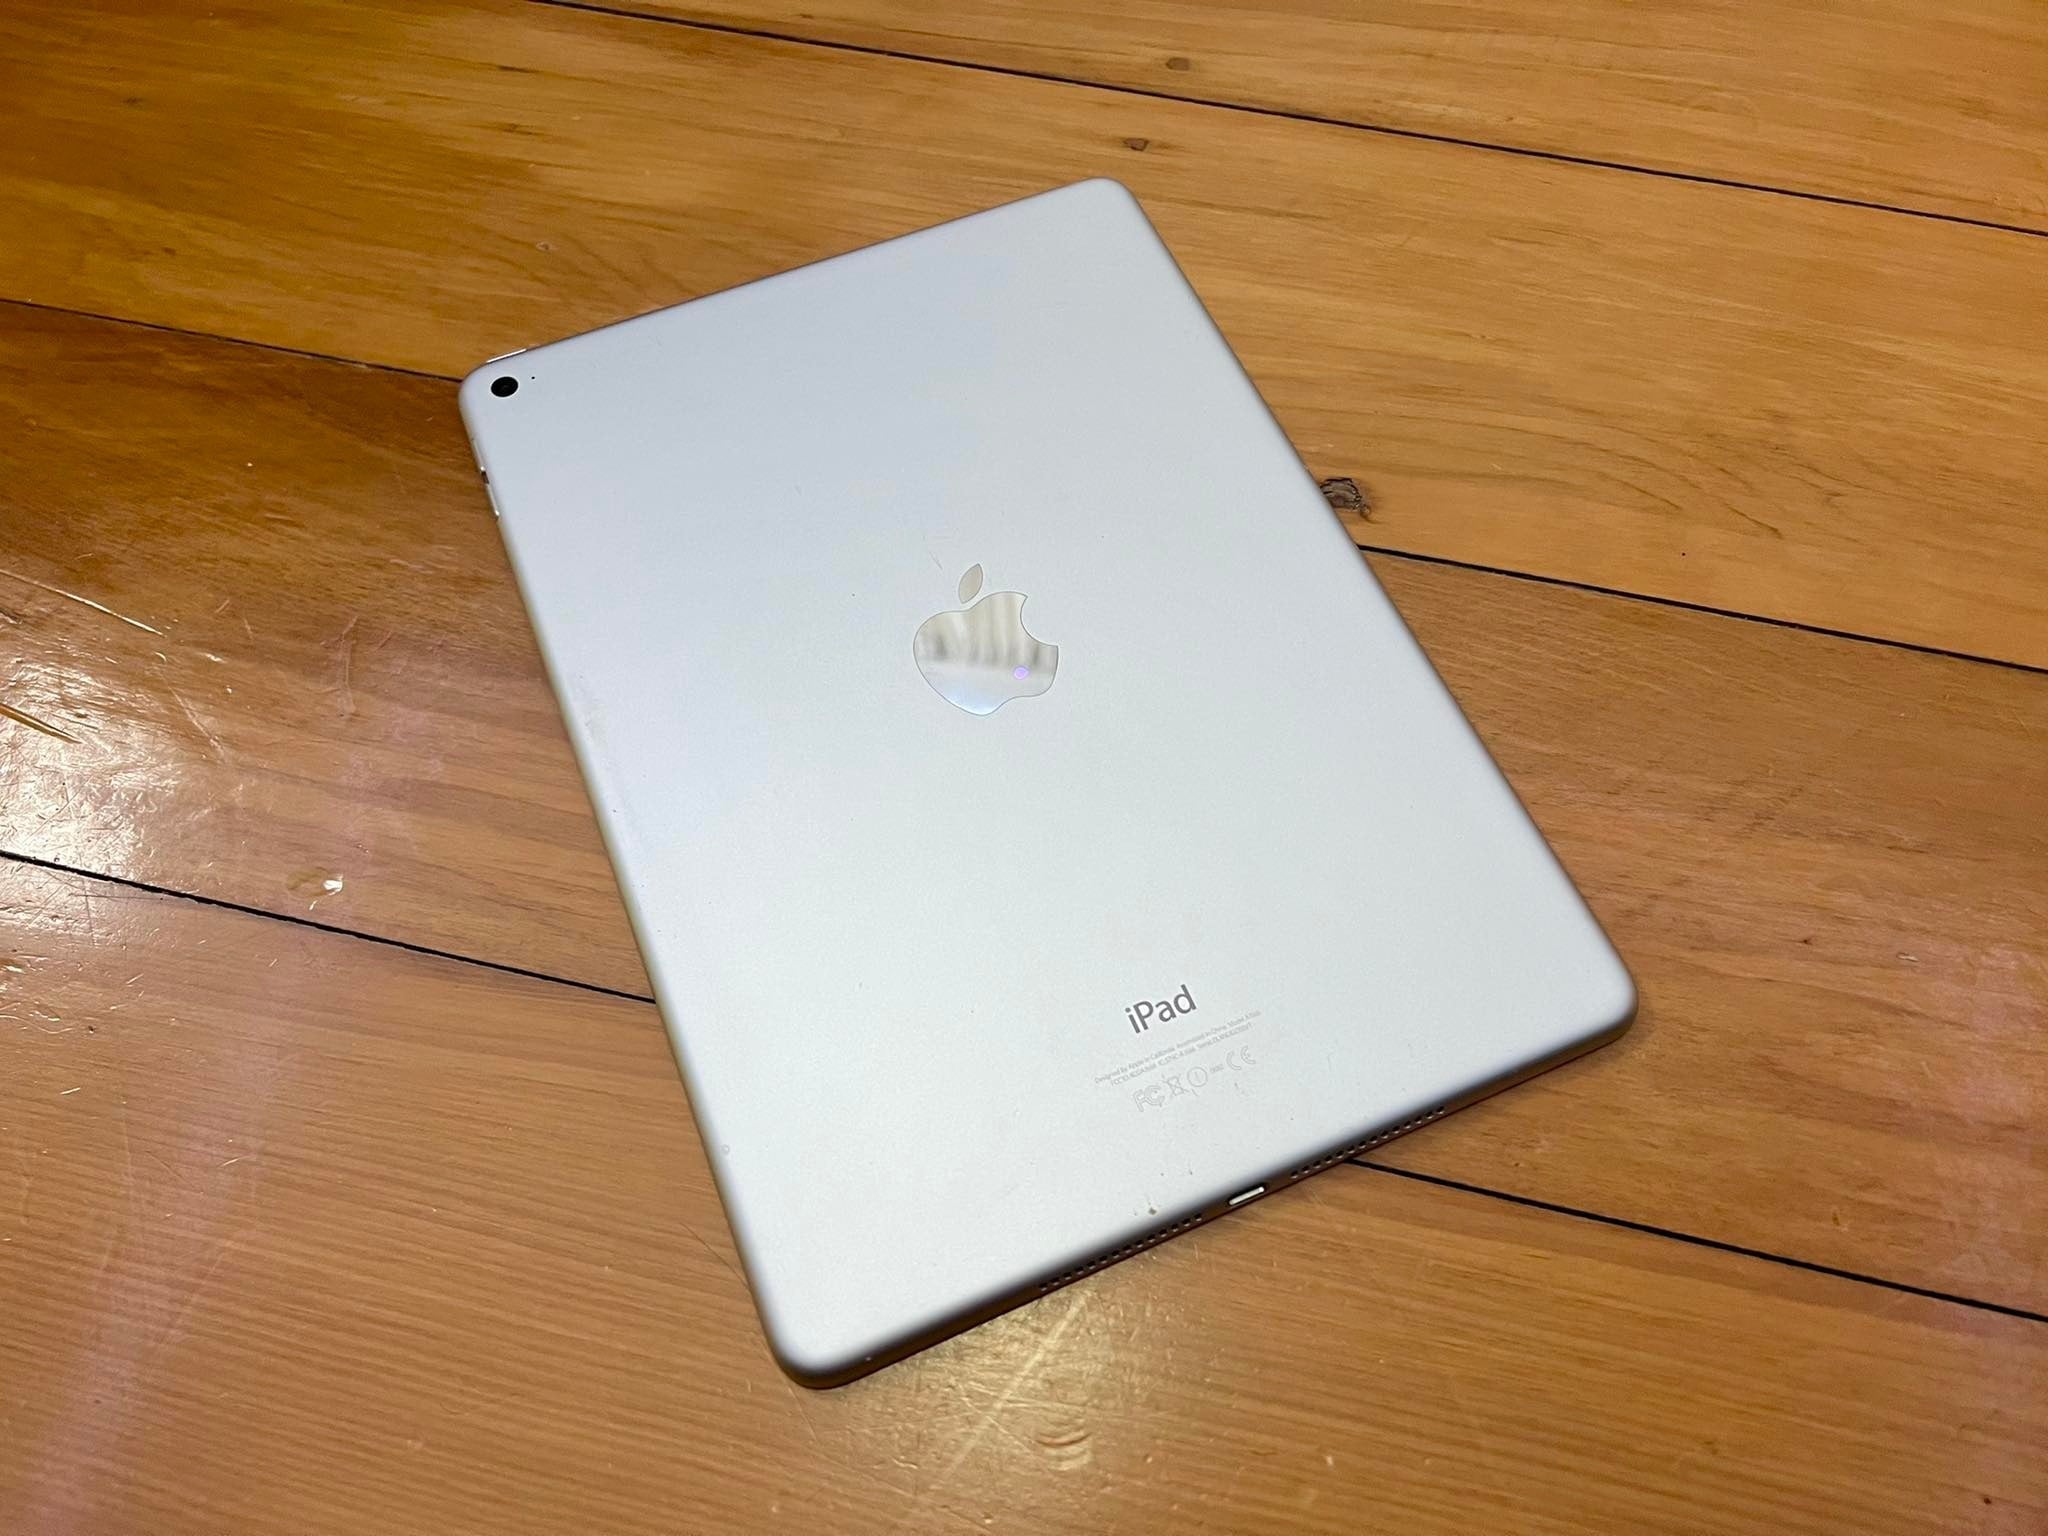 Apple iPad 5 32GB Wifi White Silver (Good) Free Shipping